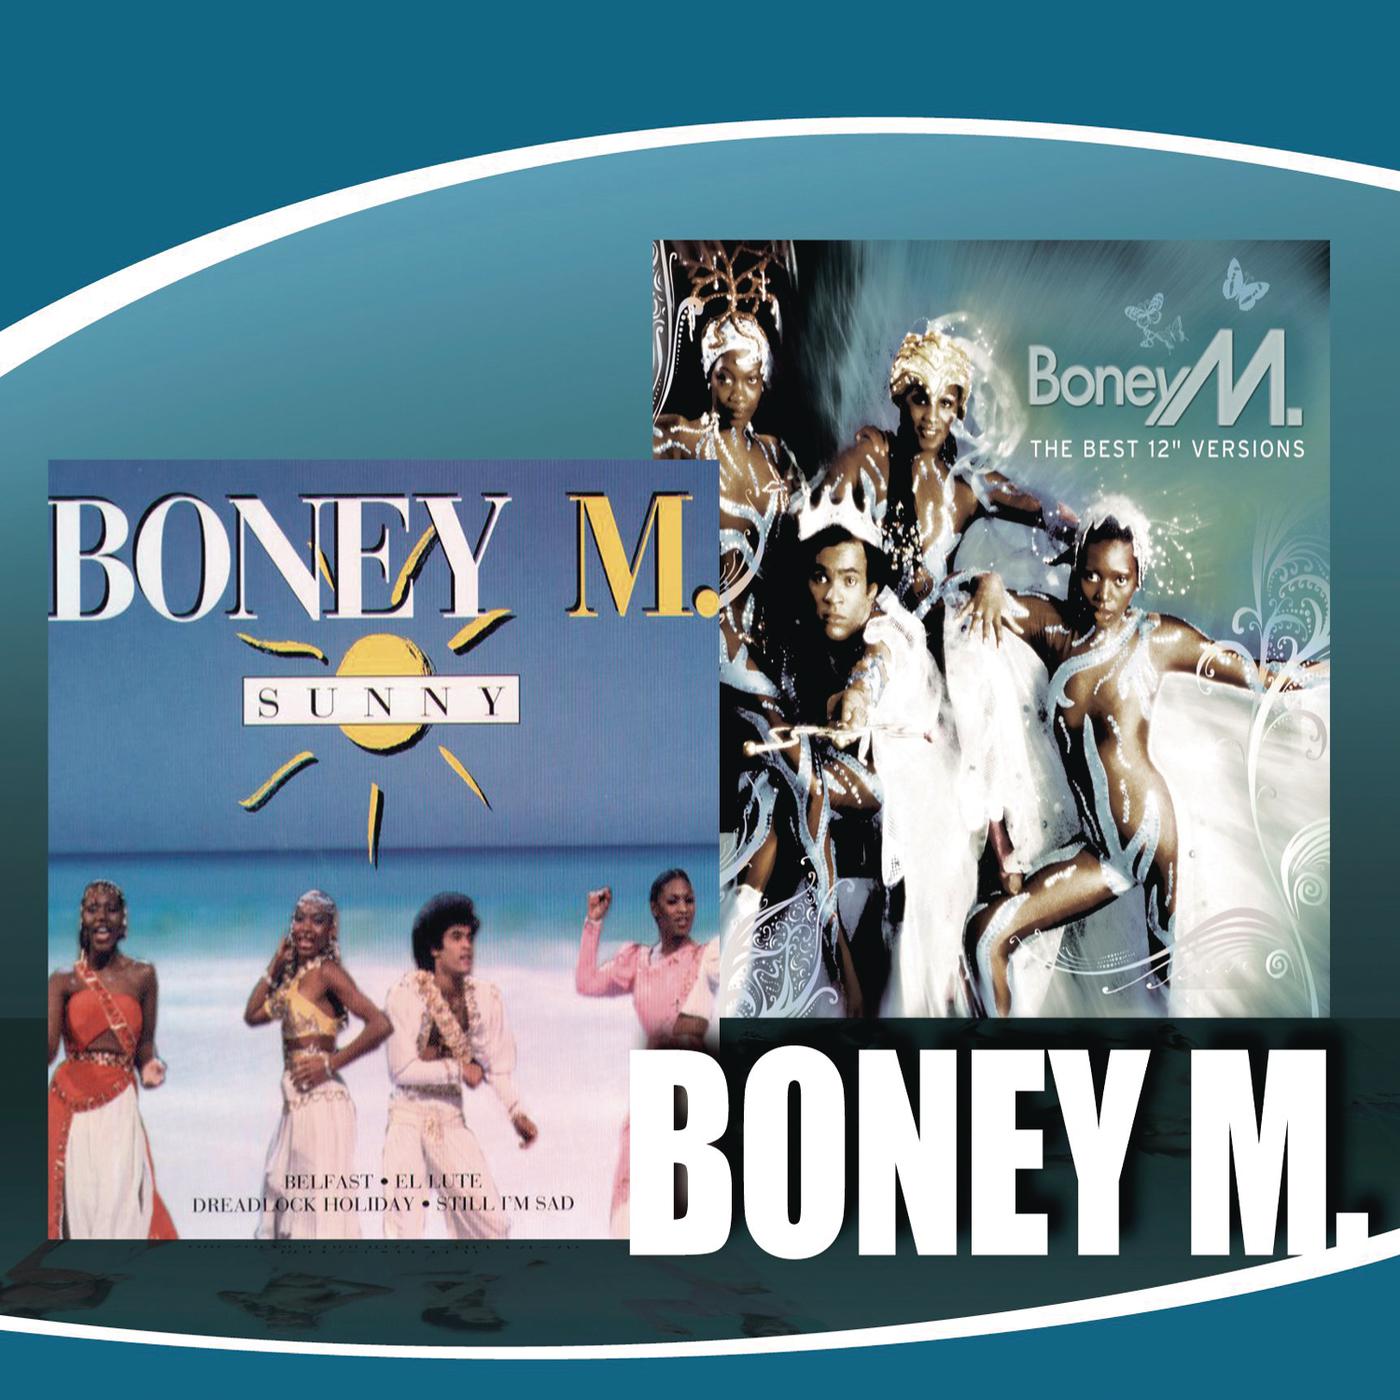 Санни слушать бони. Boney m Sunny обложка. Boney m обложки альбомов. Boney m 2014. Первый состав Boney m.